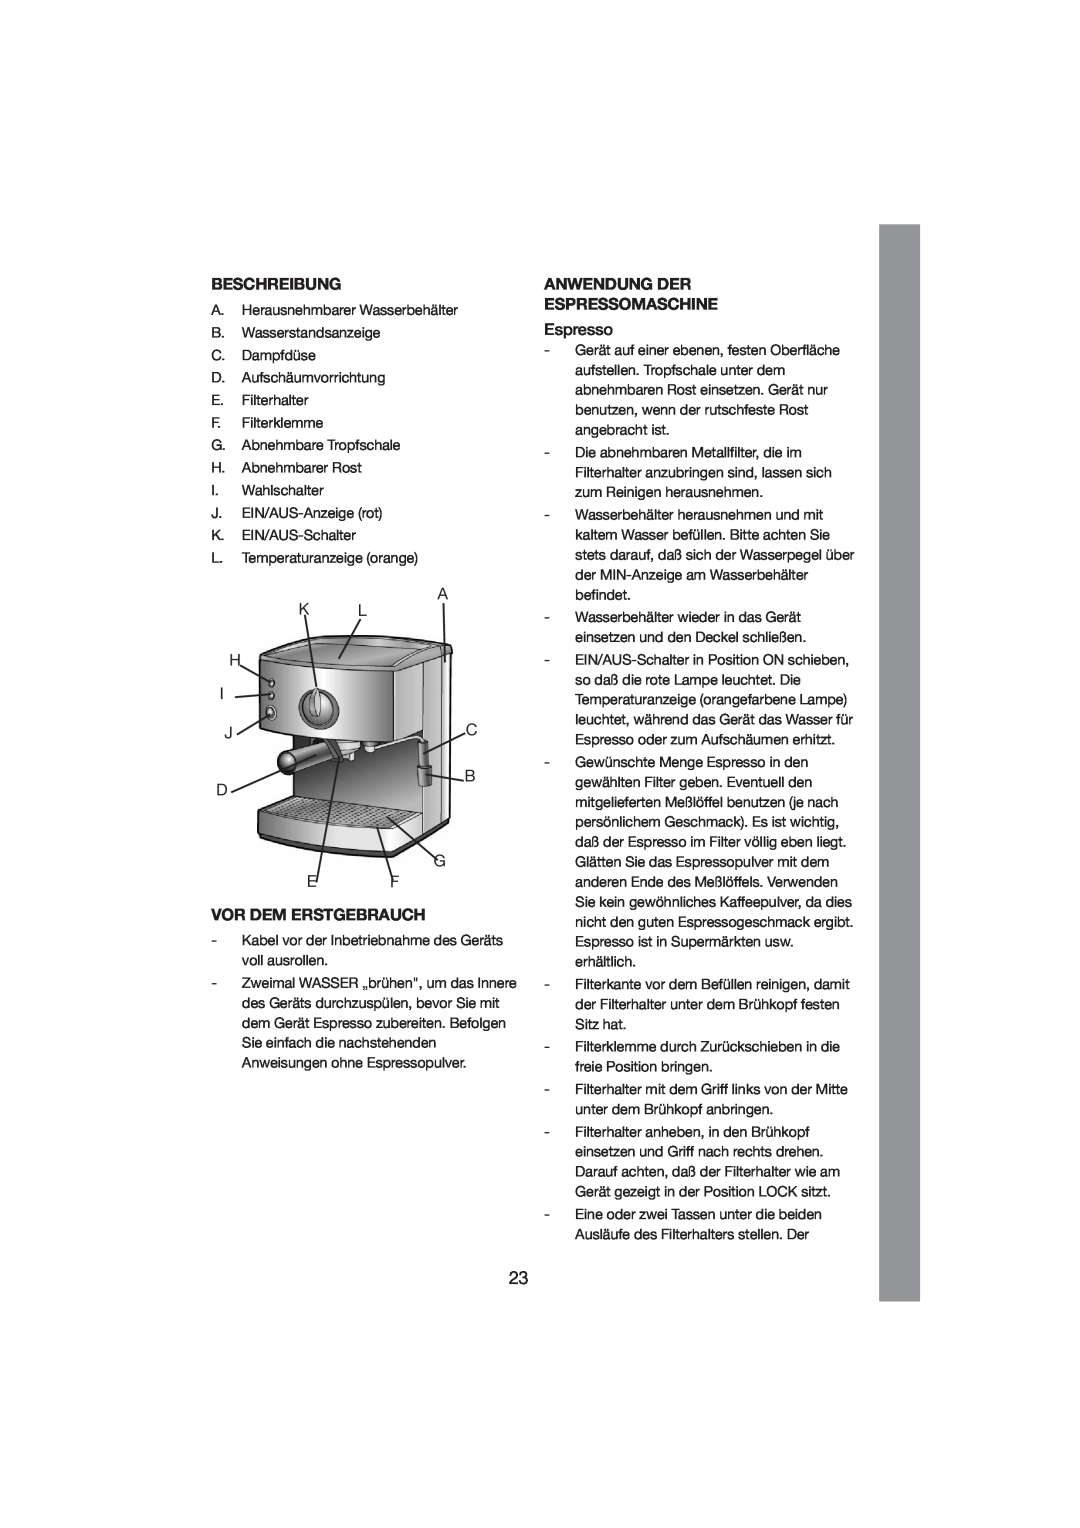 Melissa 245-027 manual Beschreibung, Vor Dem Erstgebrauch, Anwendung Der Espressomaschine 